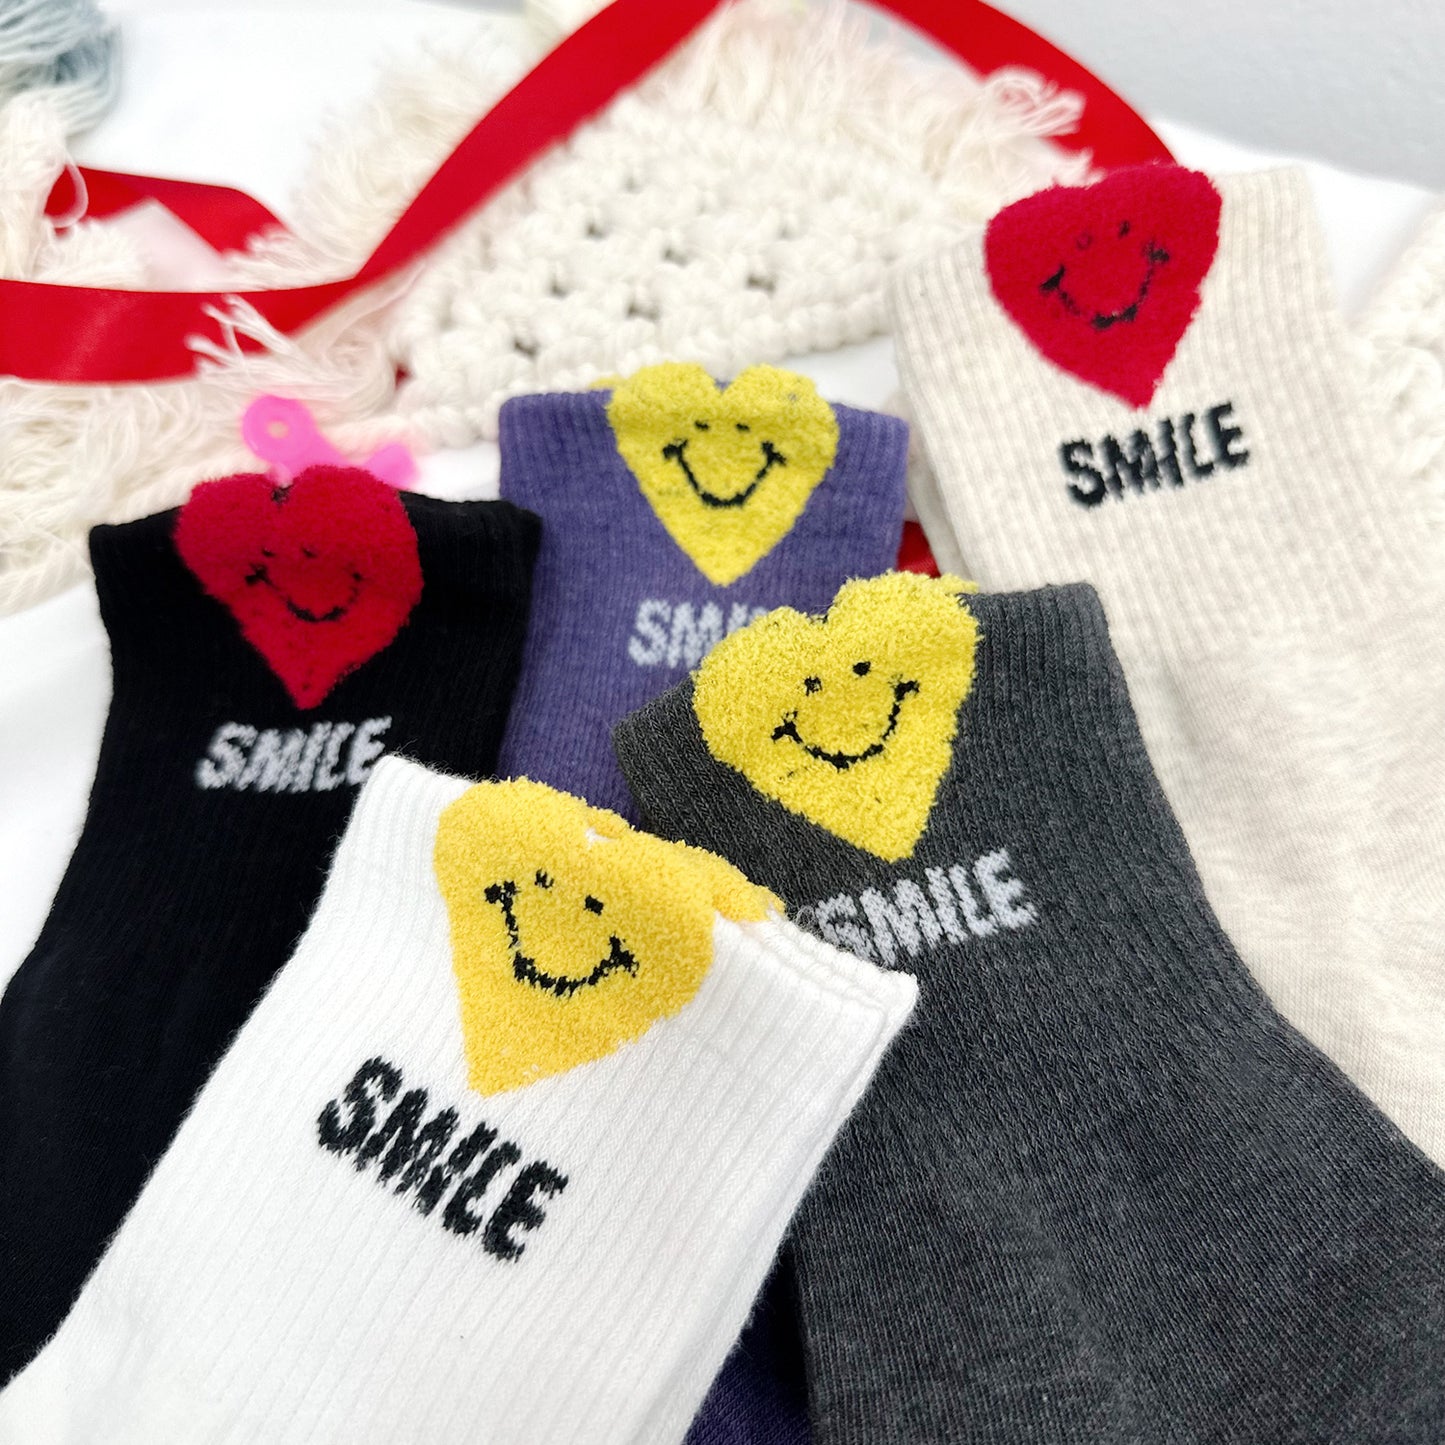 Women's Crew Love Smile Socks